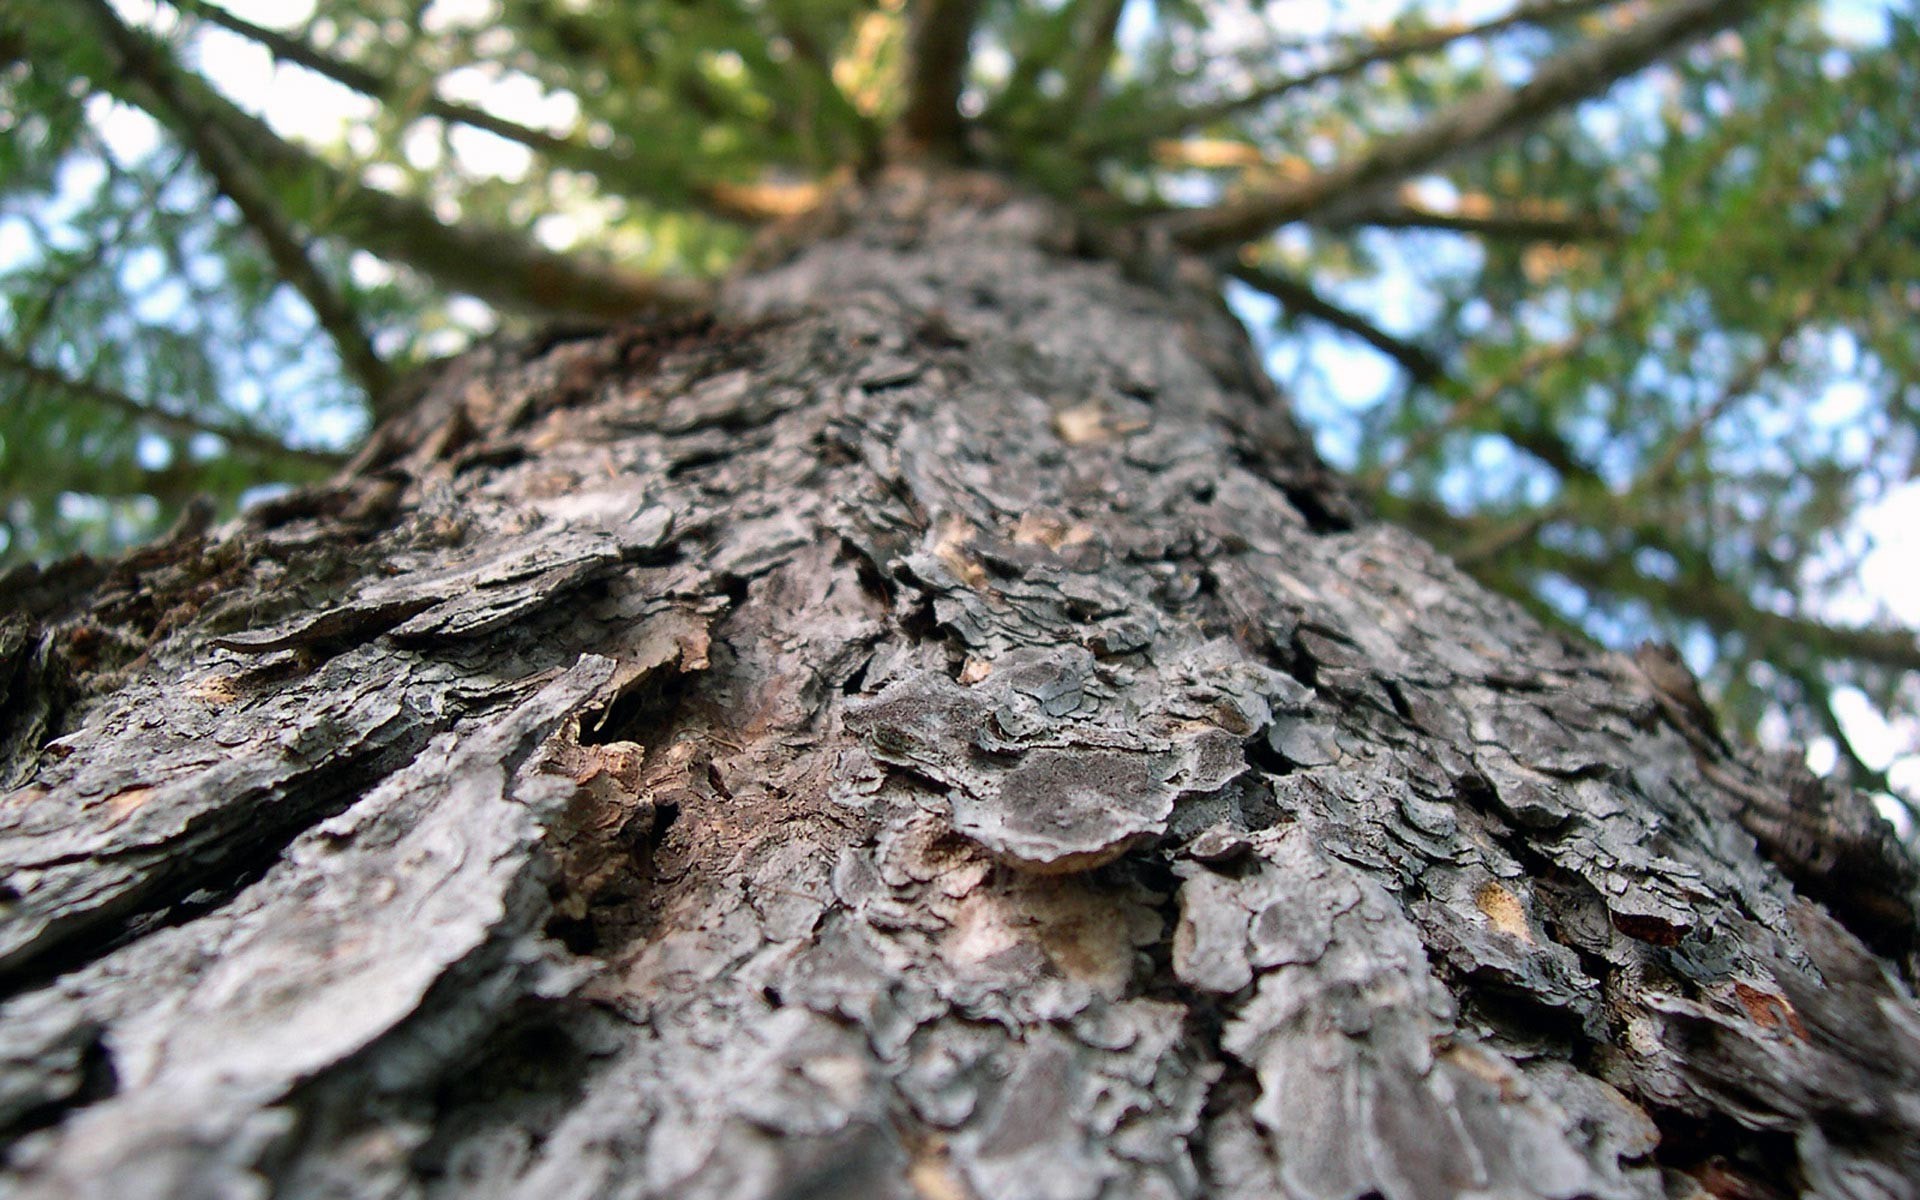 Tree Bark Wallpaper